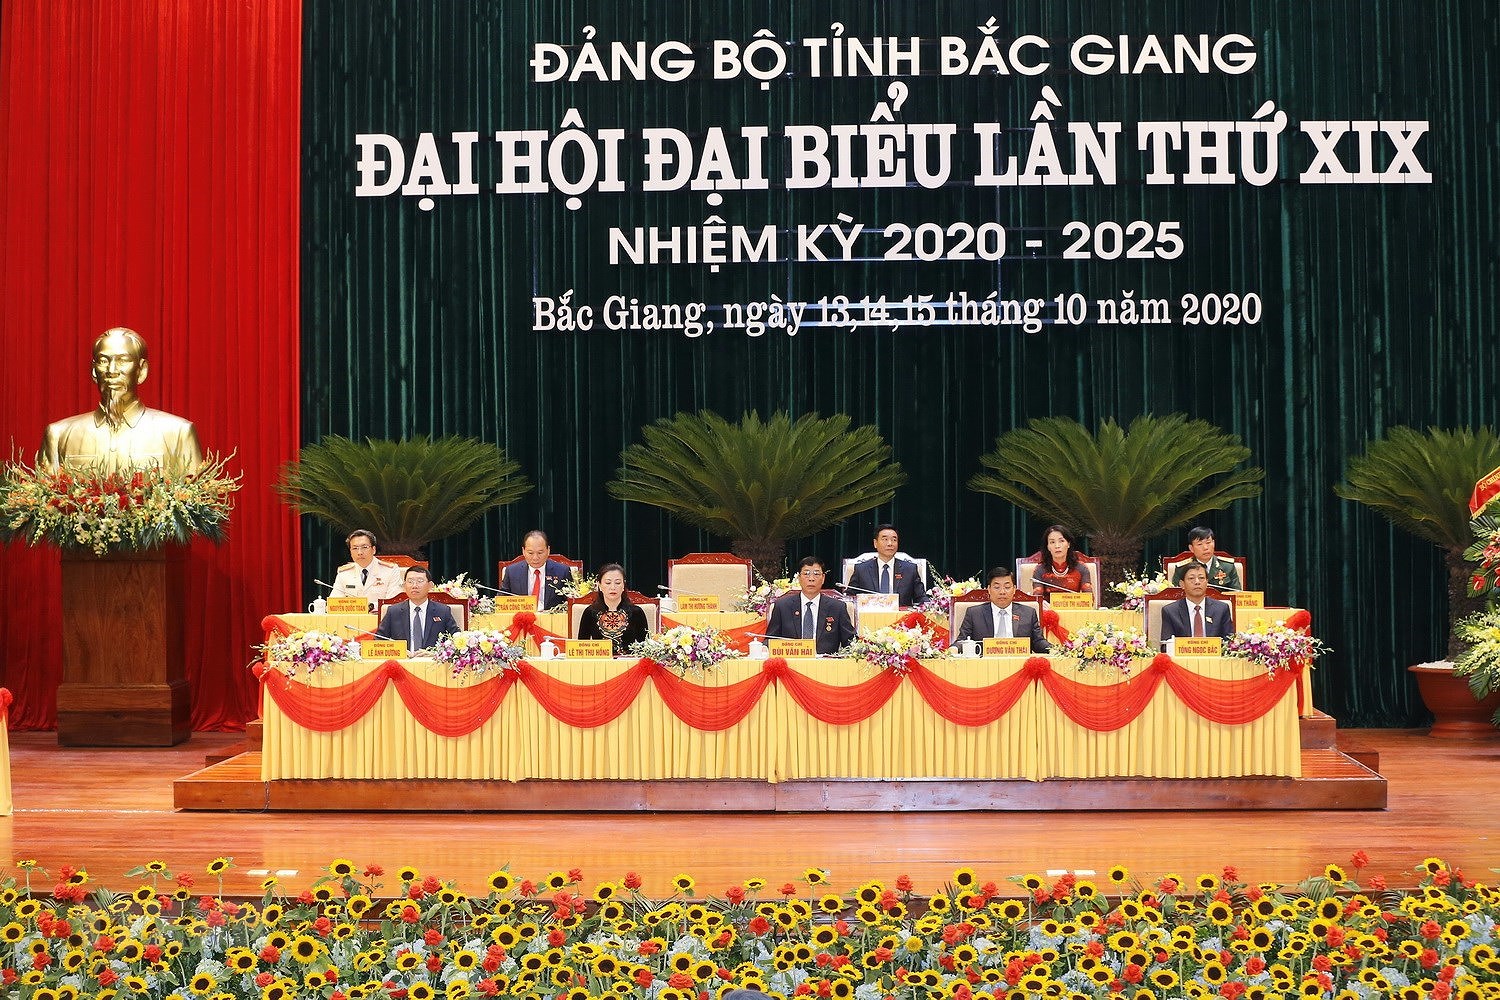 [Photo] Khai mac Dai hoi dai bieu Dang bo tinh Bac Giang lan thu XIX hinh anh 1